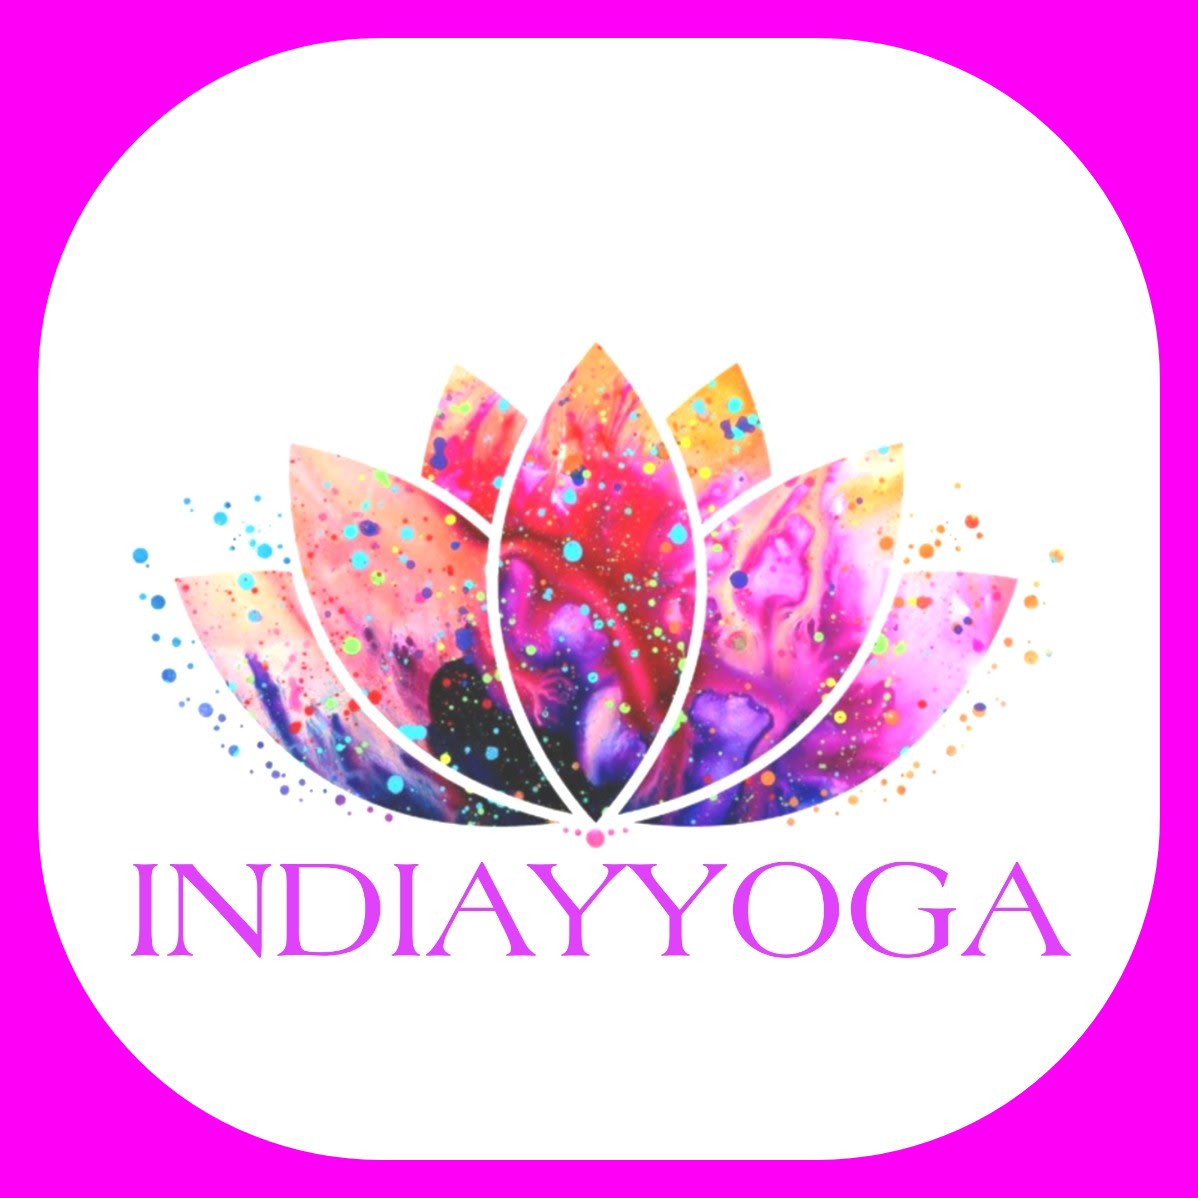 India y Yoga